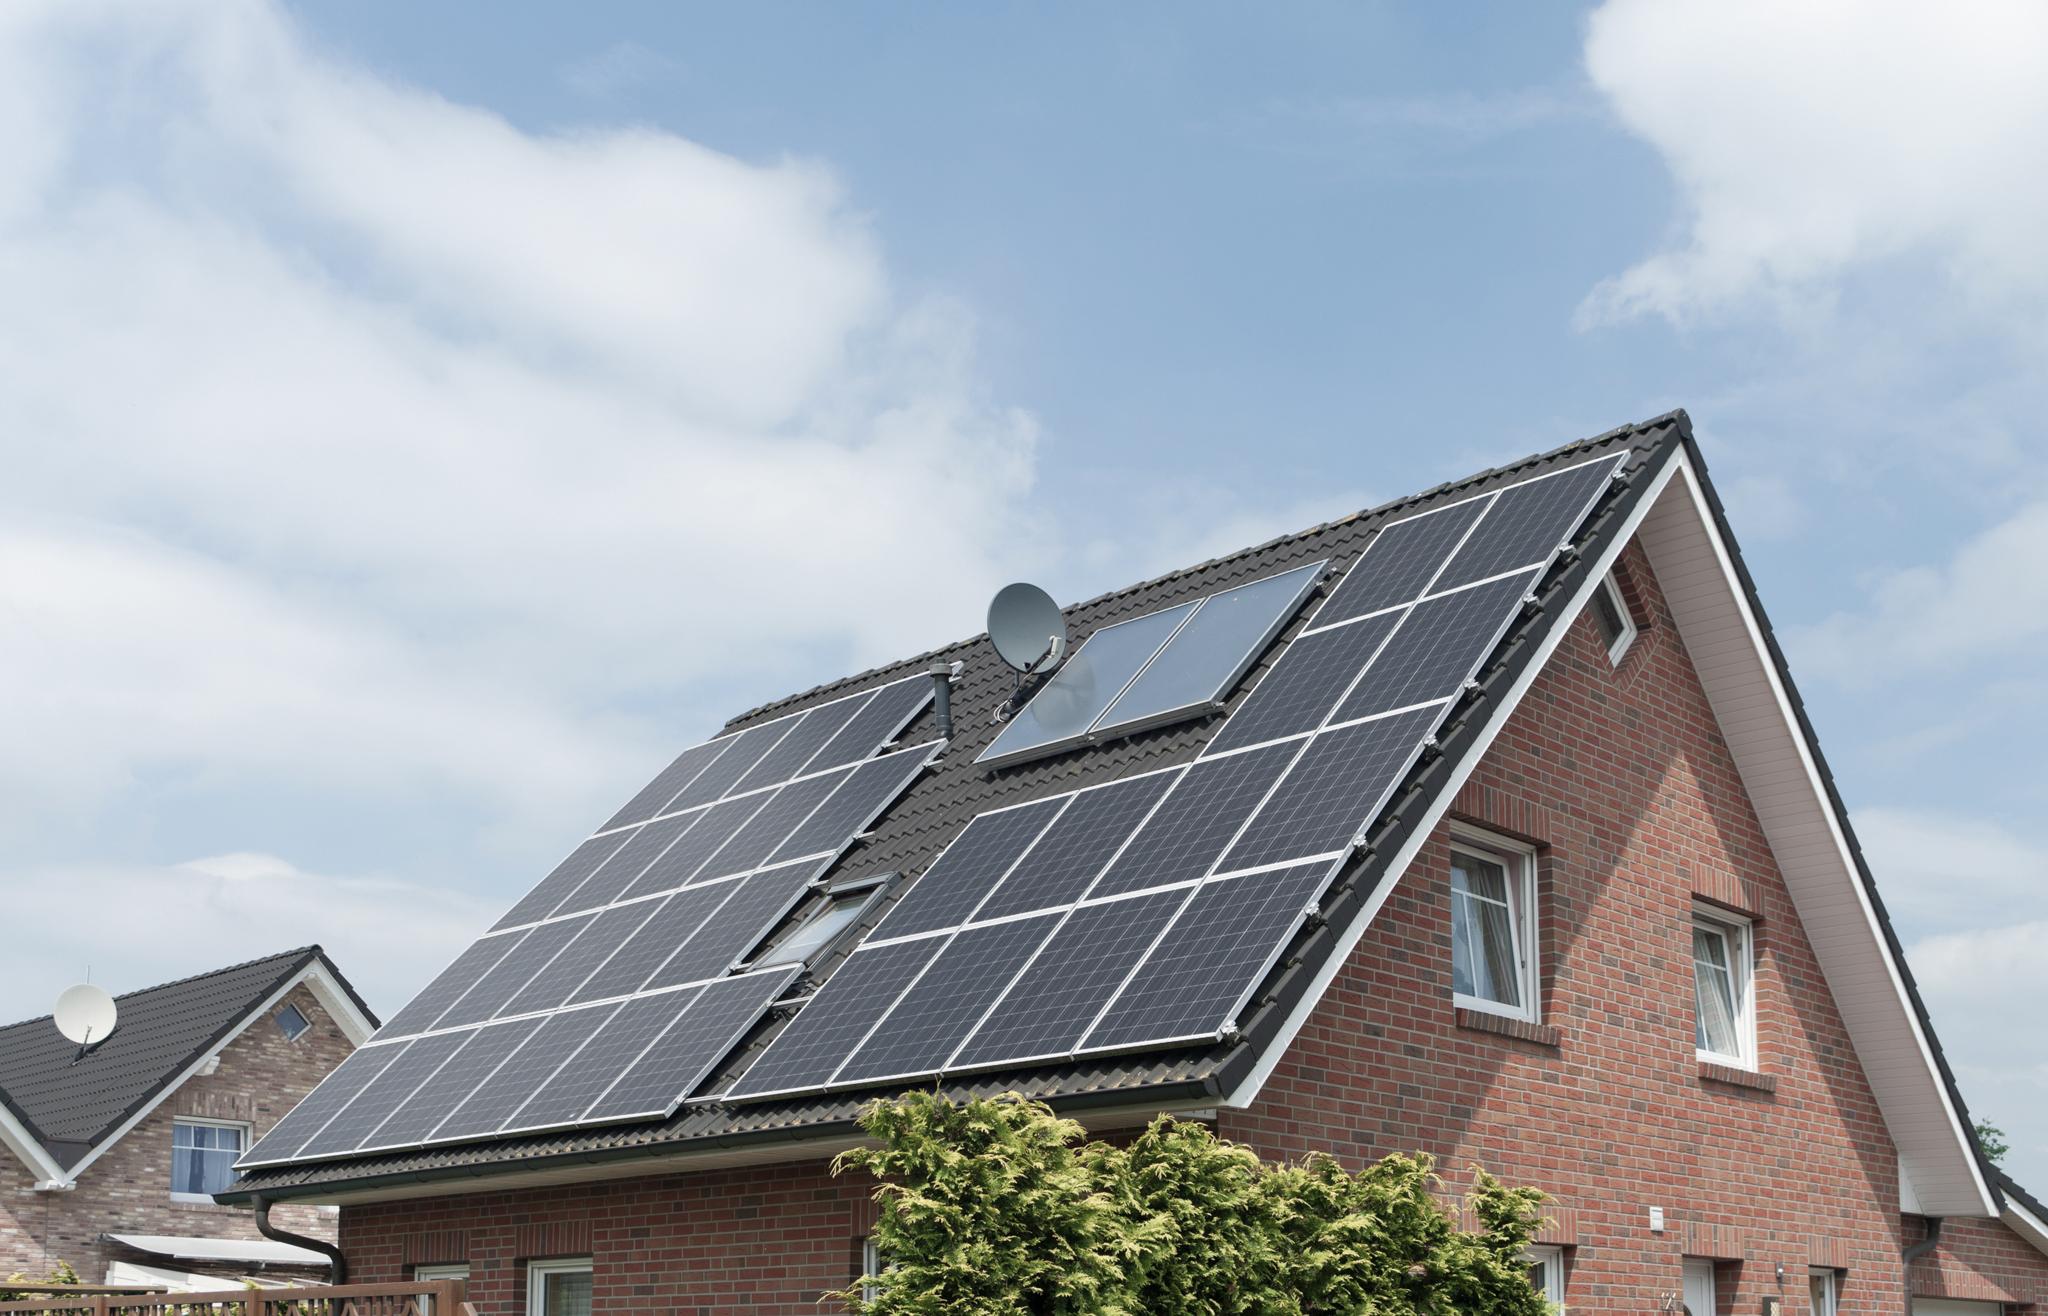 Einfamilienhaus mit Solaranlage auf dem Dach – PV-Anlage ohne Anmeldung